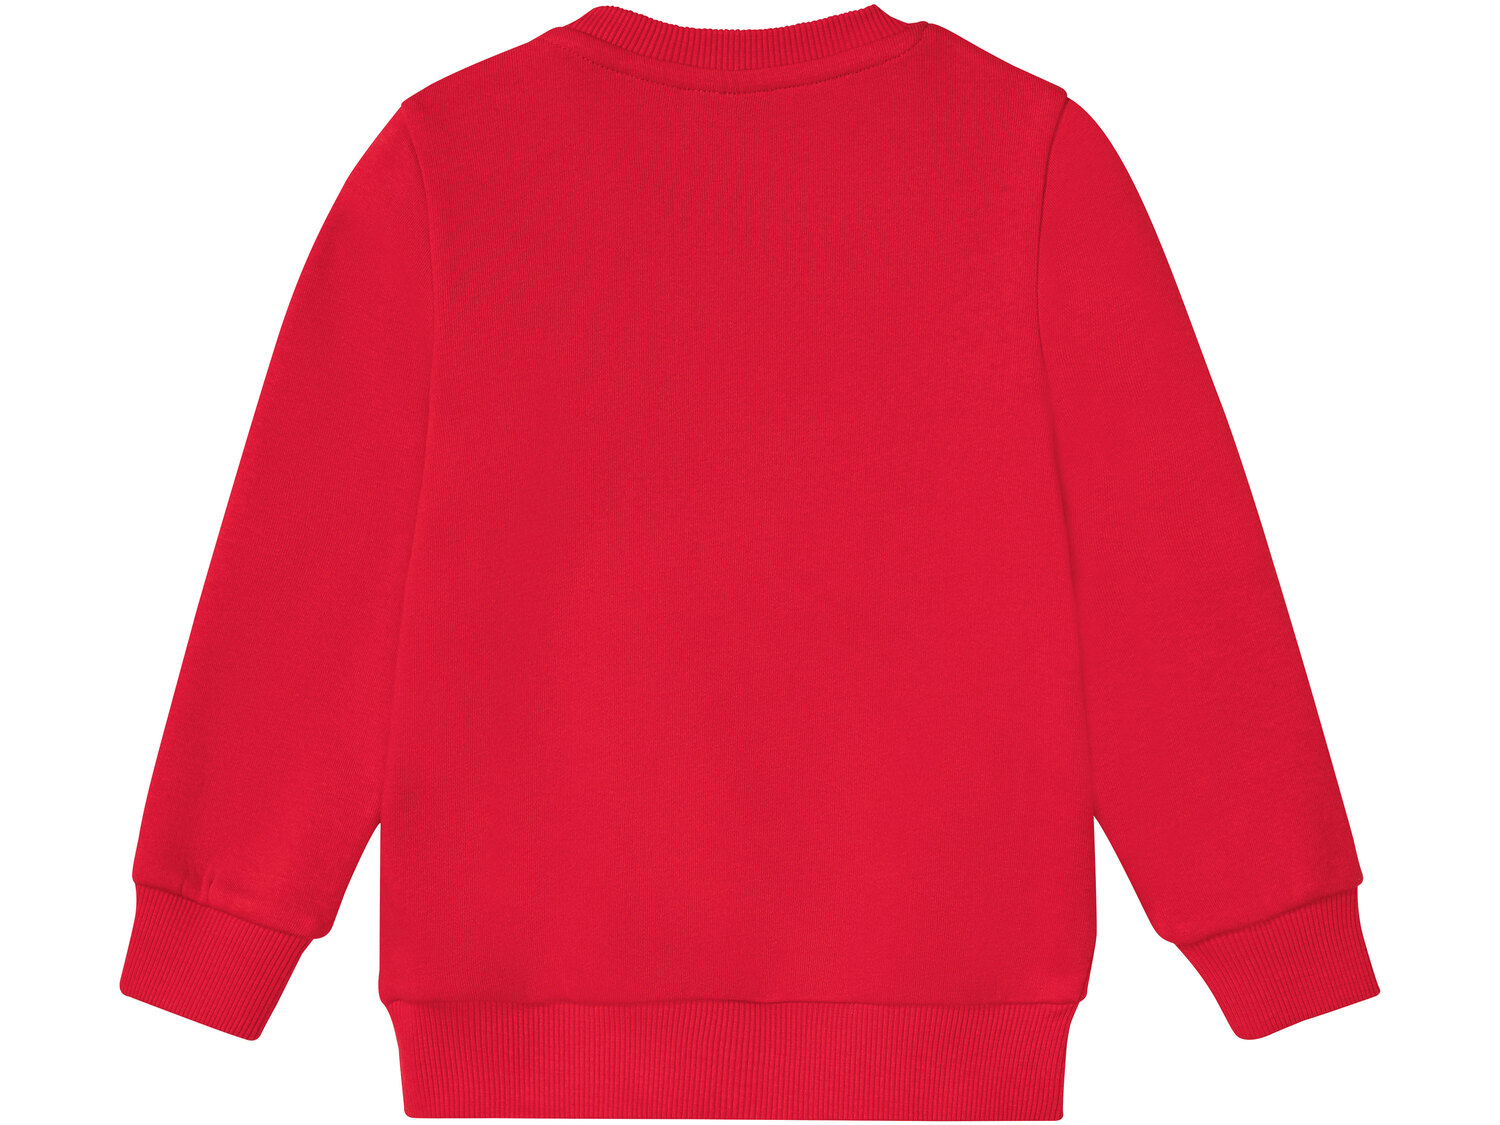 Bluza dresowa dziecięca , cena 24,99 PLN 
- rozmiary: 86-116
- zapinana kieszonka
Dostępne ...